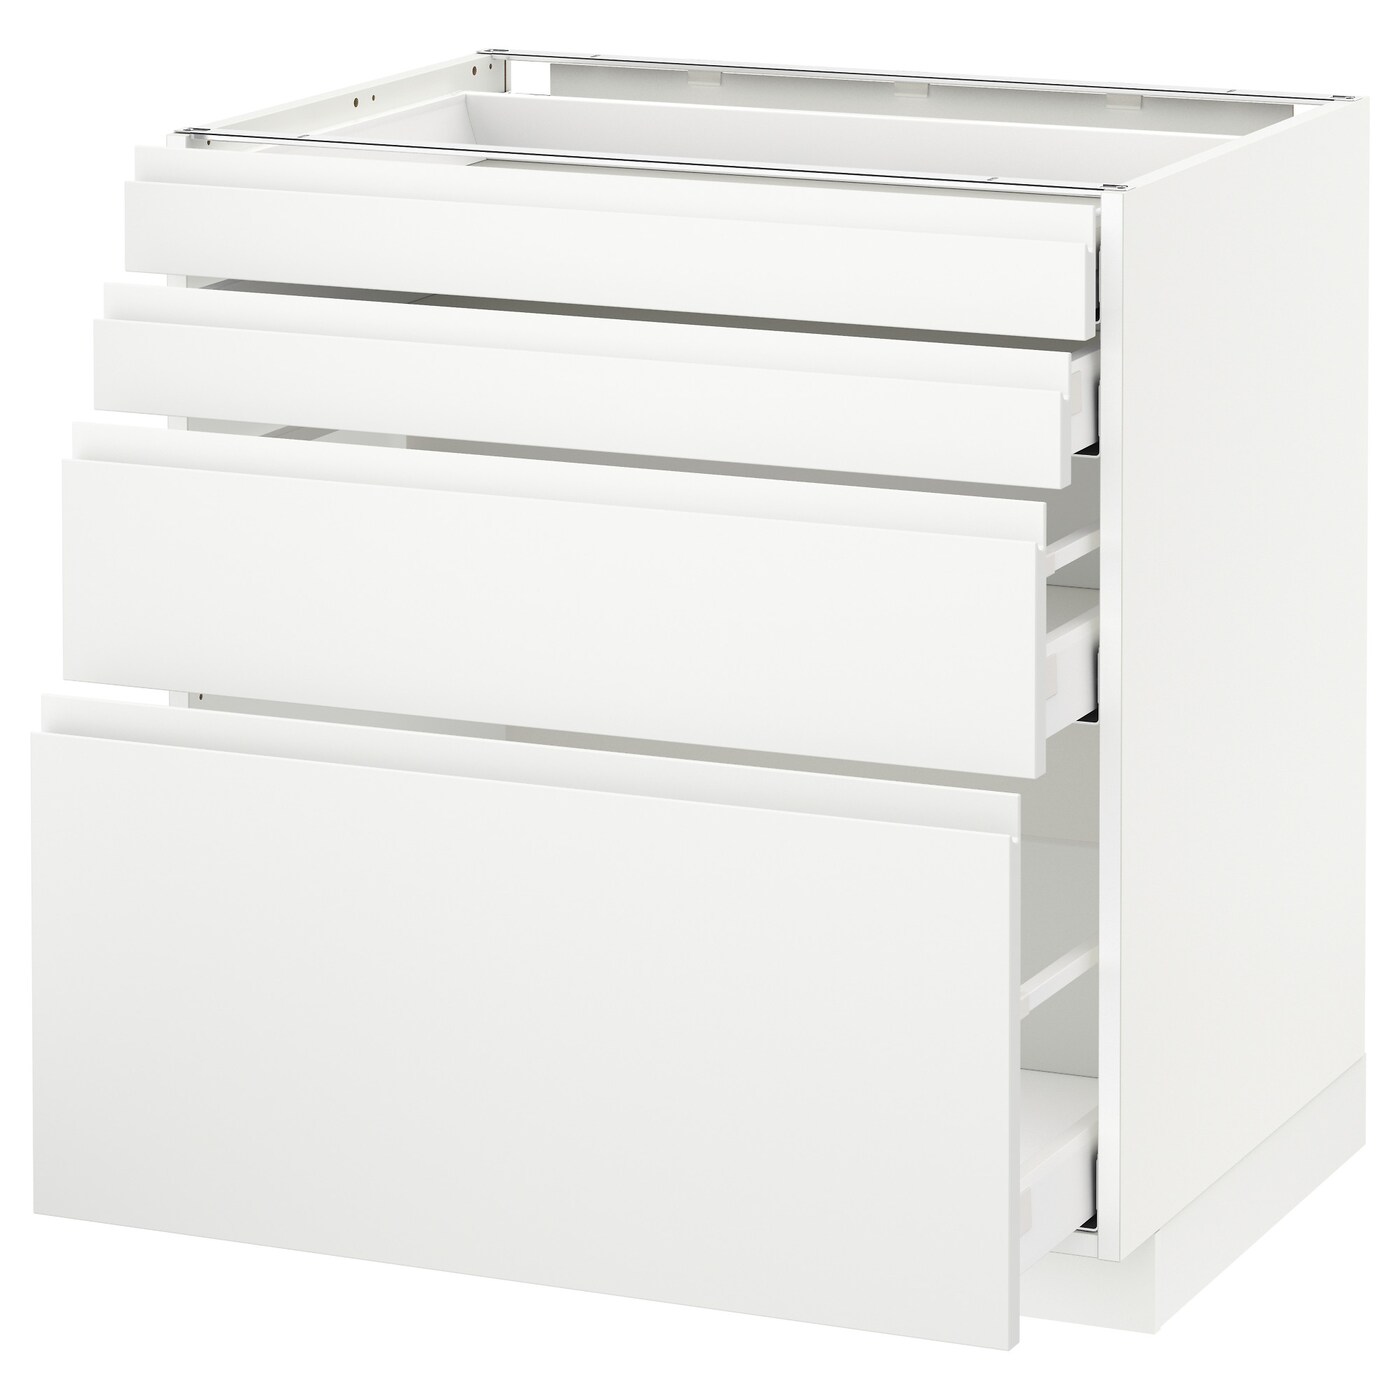 Напольный кухонный шкаф  - IKEA METOD MAXIMERA, 88x62,1x80см, белый, МЕТОД МАКСИМЕРА ИКЕА